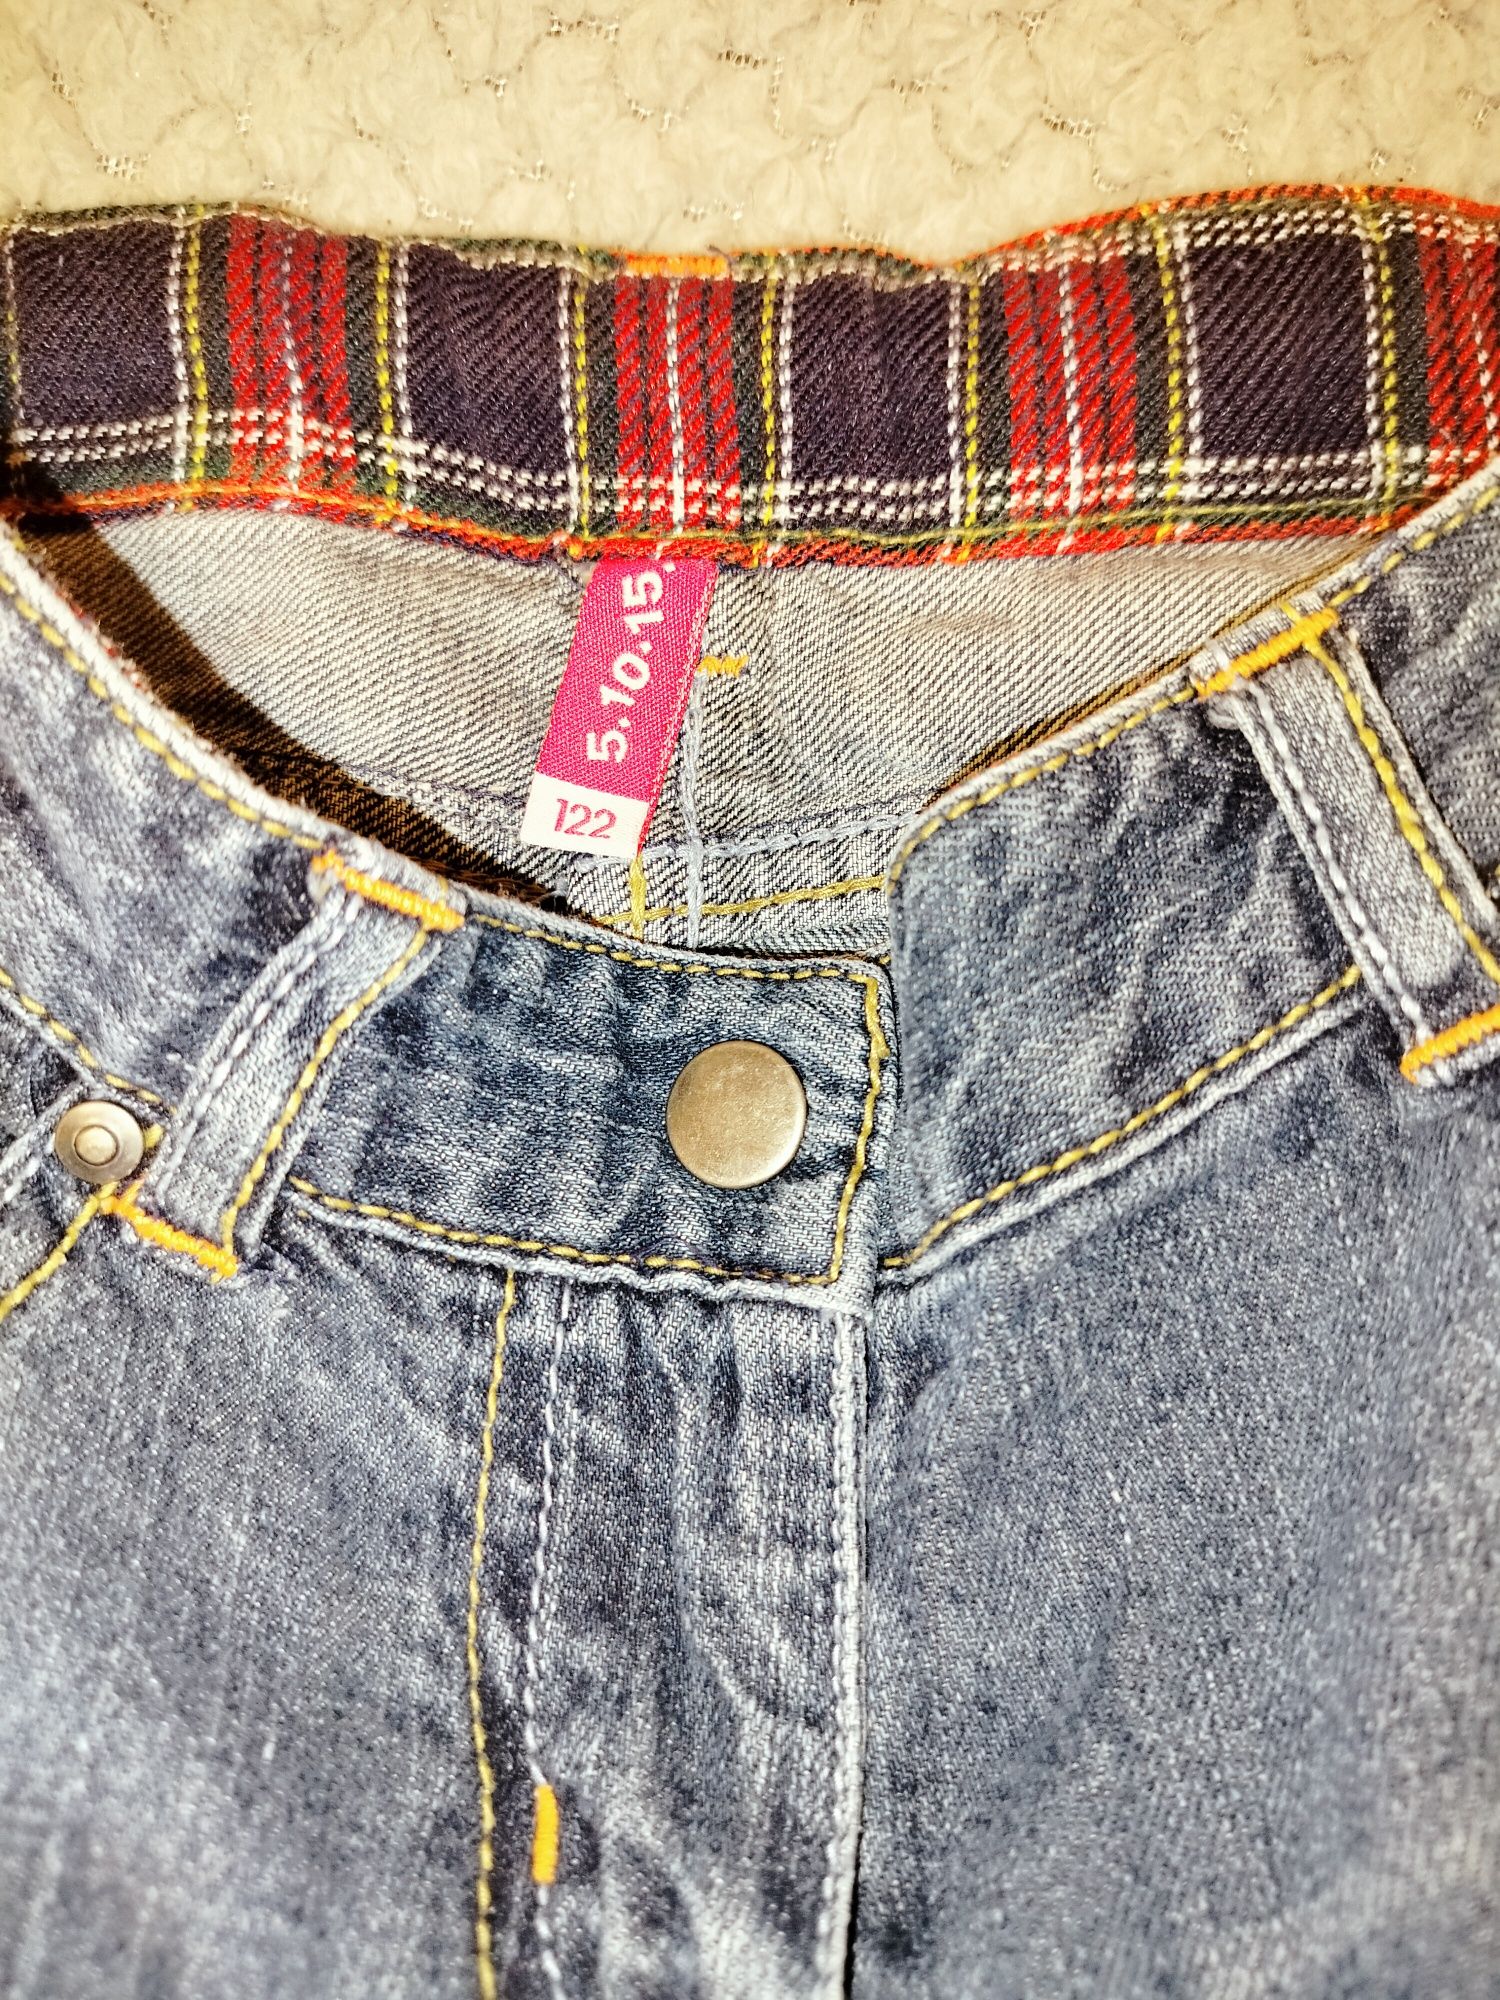 Spódniczka mini jeansowa 5.10.15, rozmiar 122/128  bardzo dobry stan